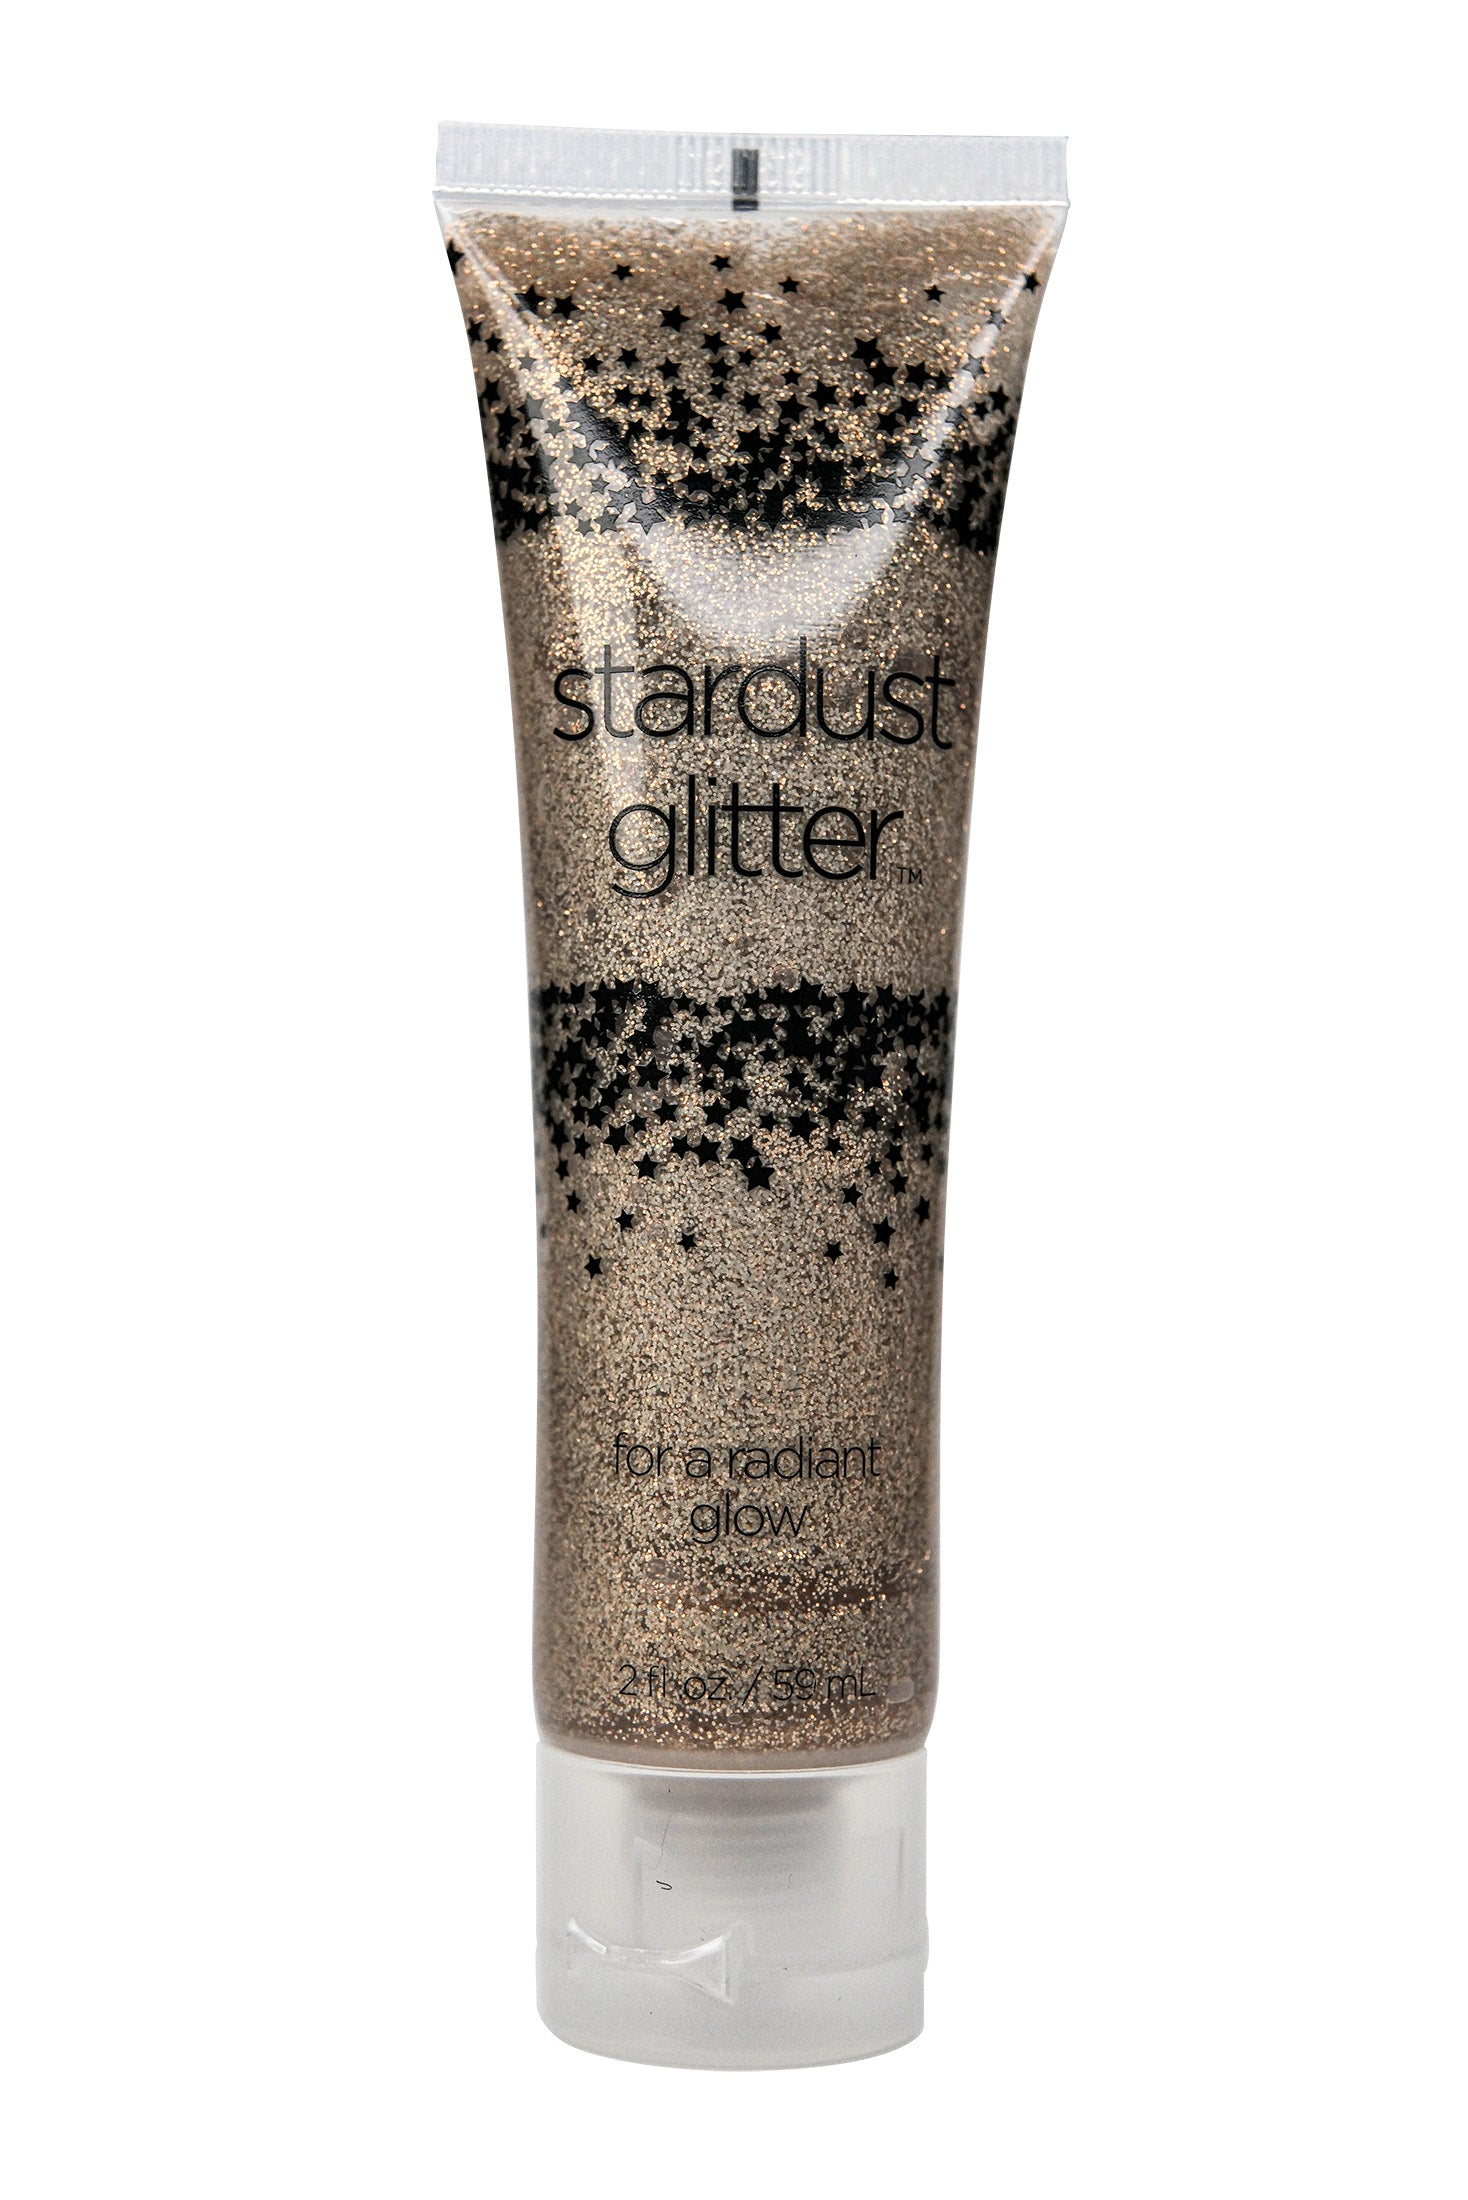 Stardust Glitter Kingman Industries LLC